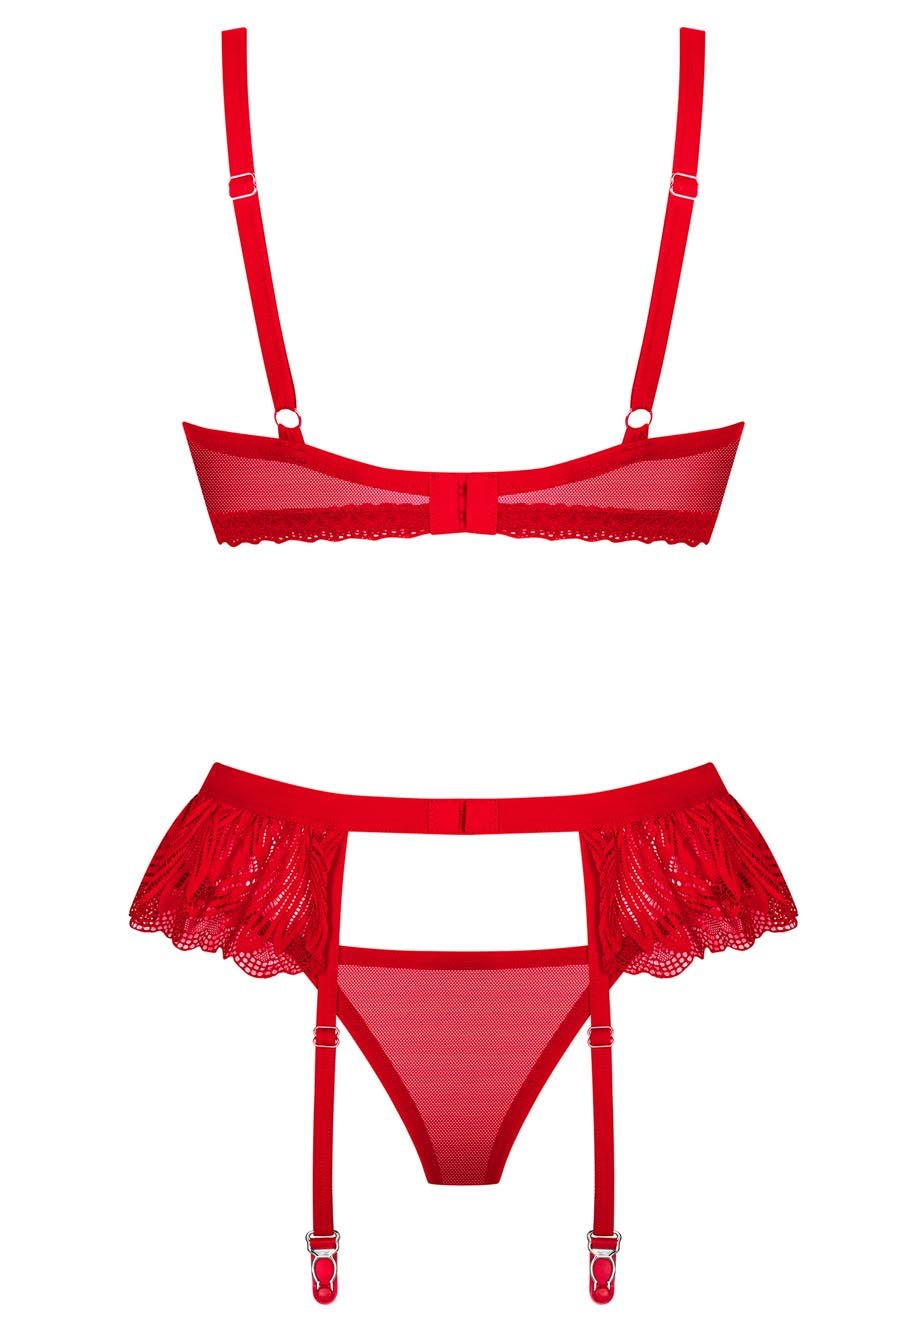 red sheer lingerie australia 